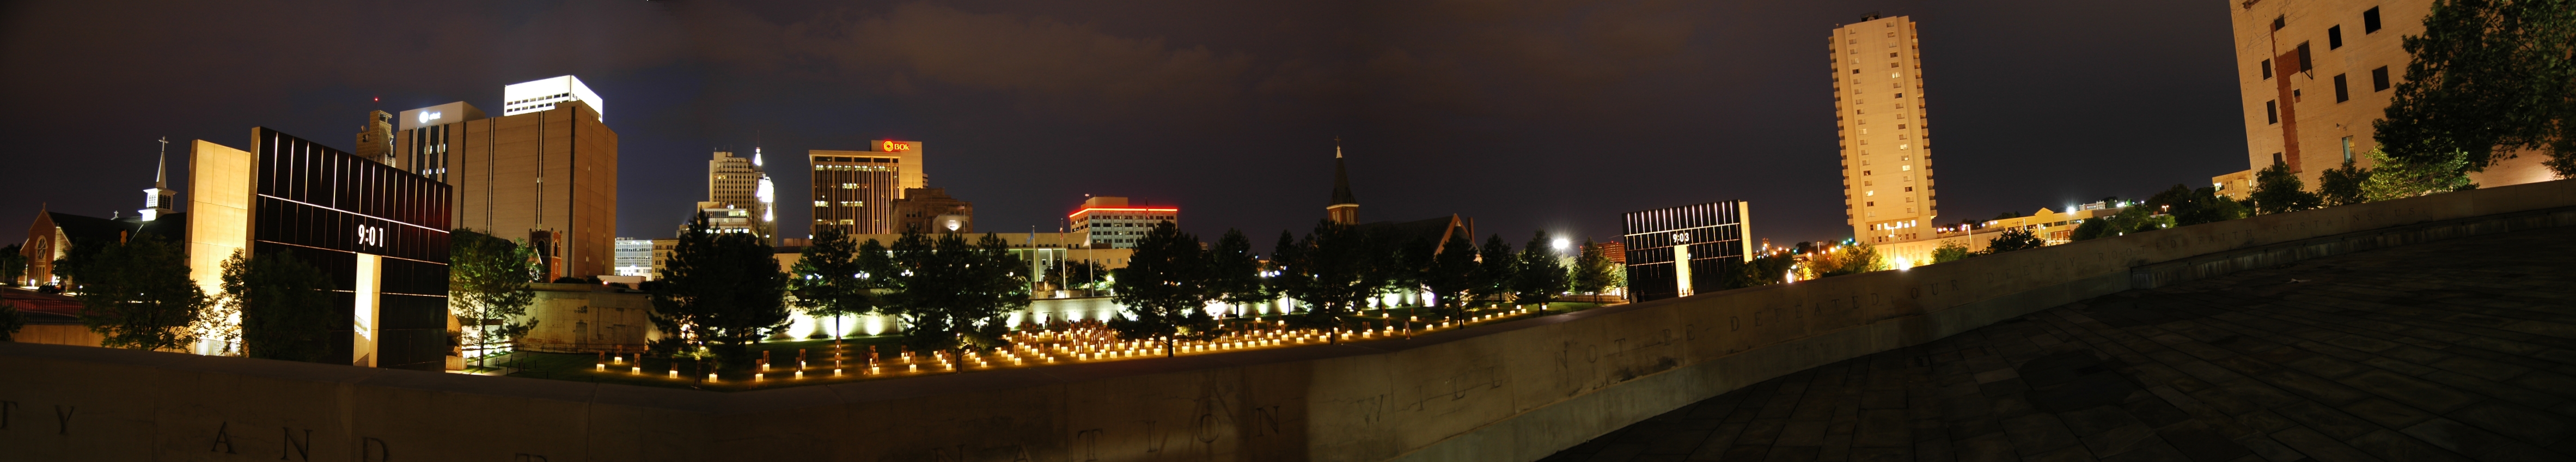 Oklahoma City  bombing memorial pano.JPG